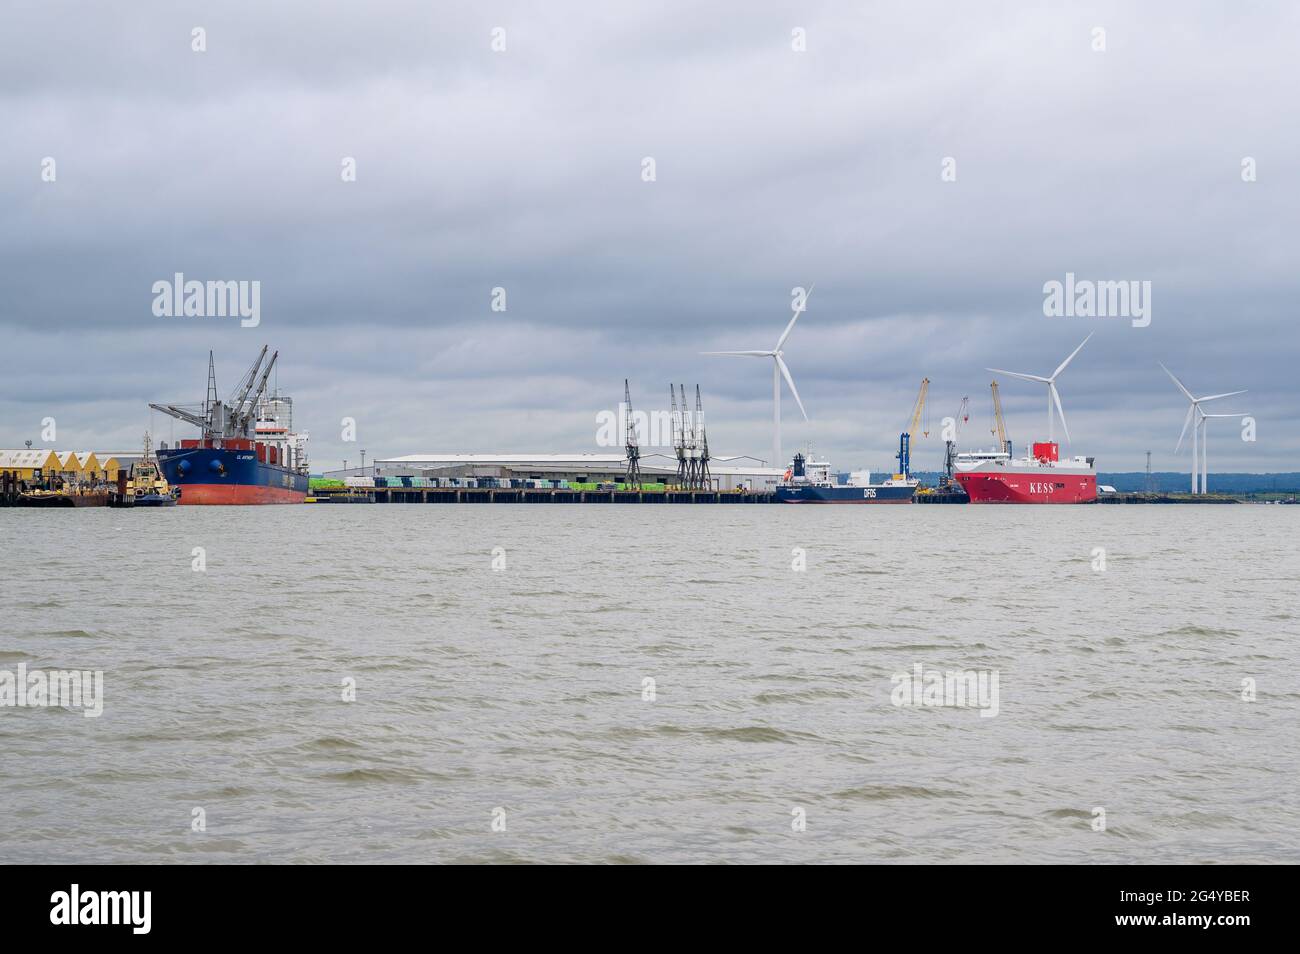 Trois navires commerciaux amarrés au port de l'île de Shepey, dans l'estuaire de la Tamise, dans le Kent, en Angleterre. Banque D'Images